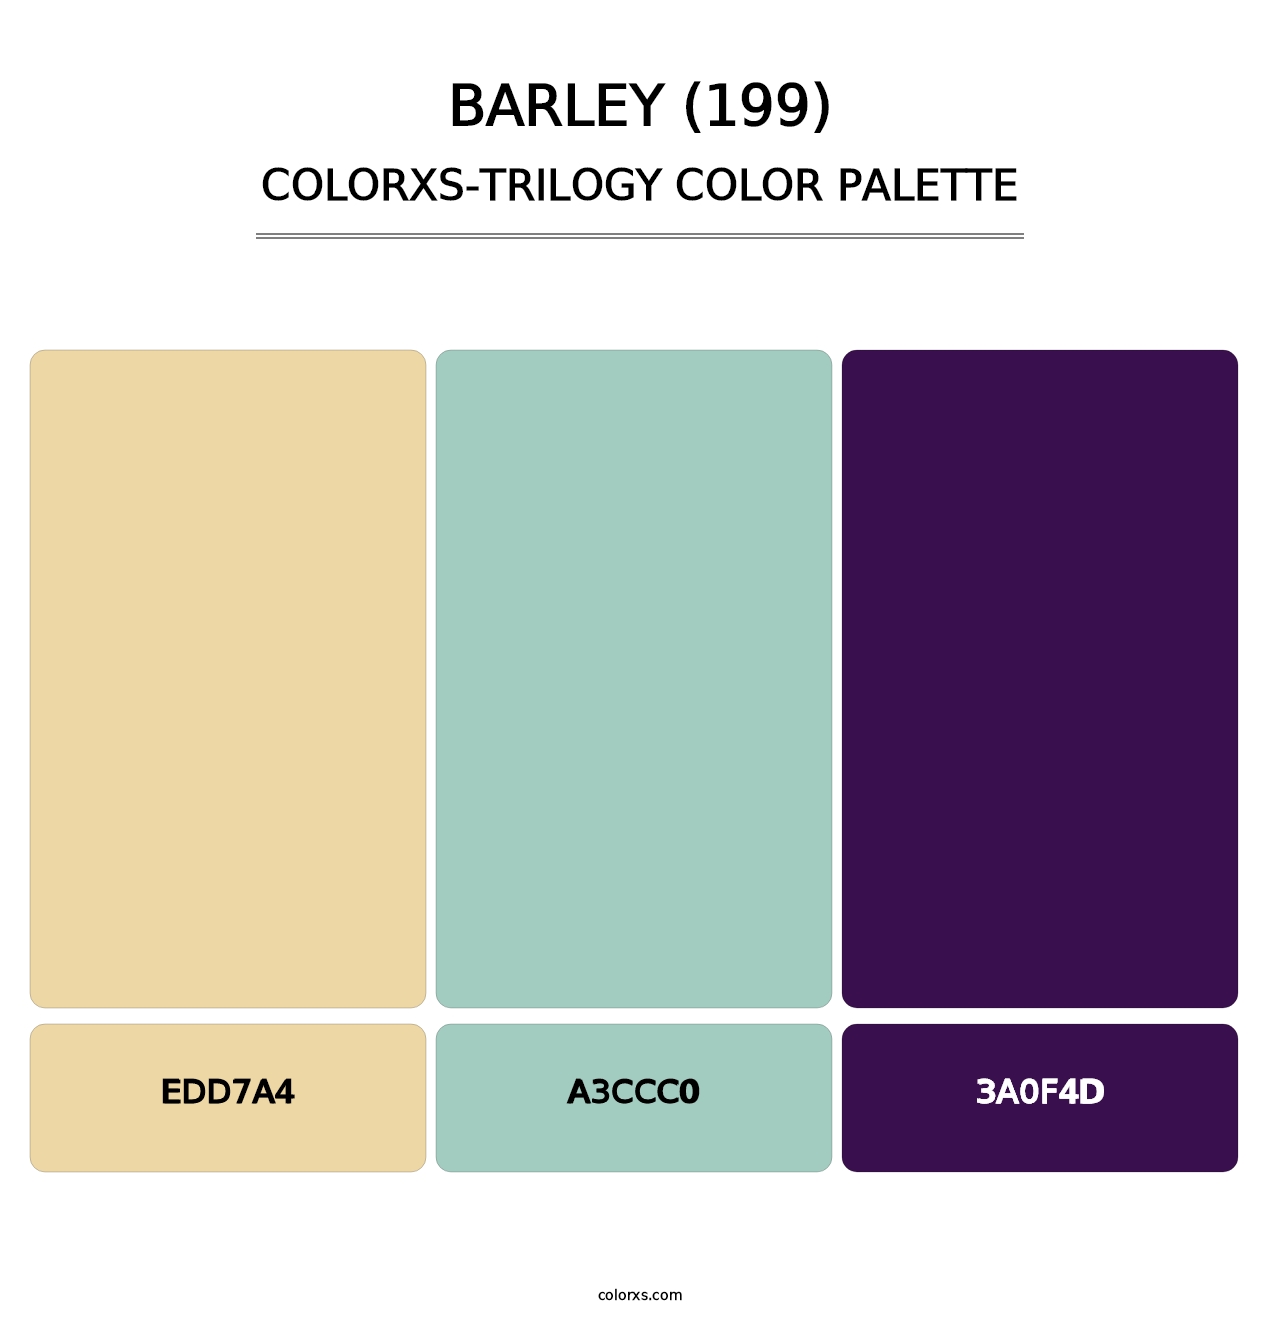 Barley (199) - Colorxs Trilogy Palette